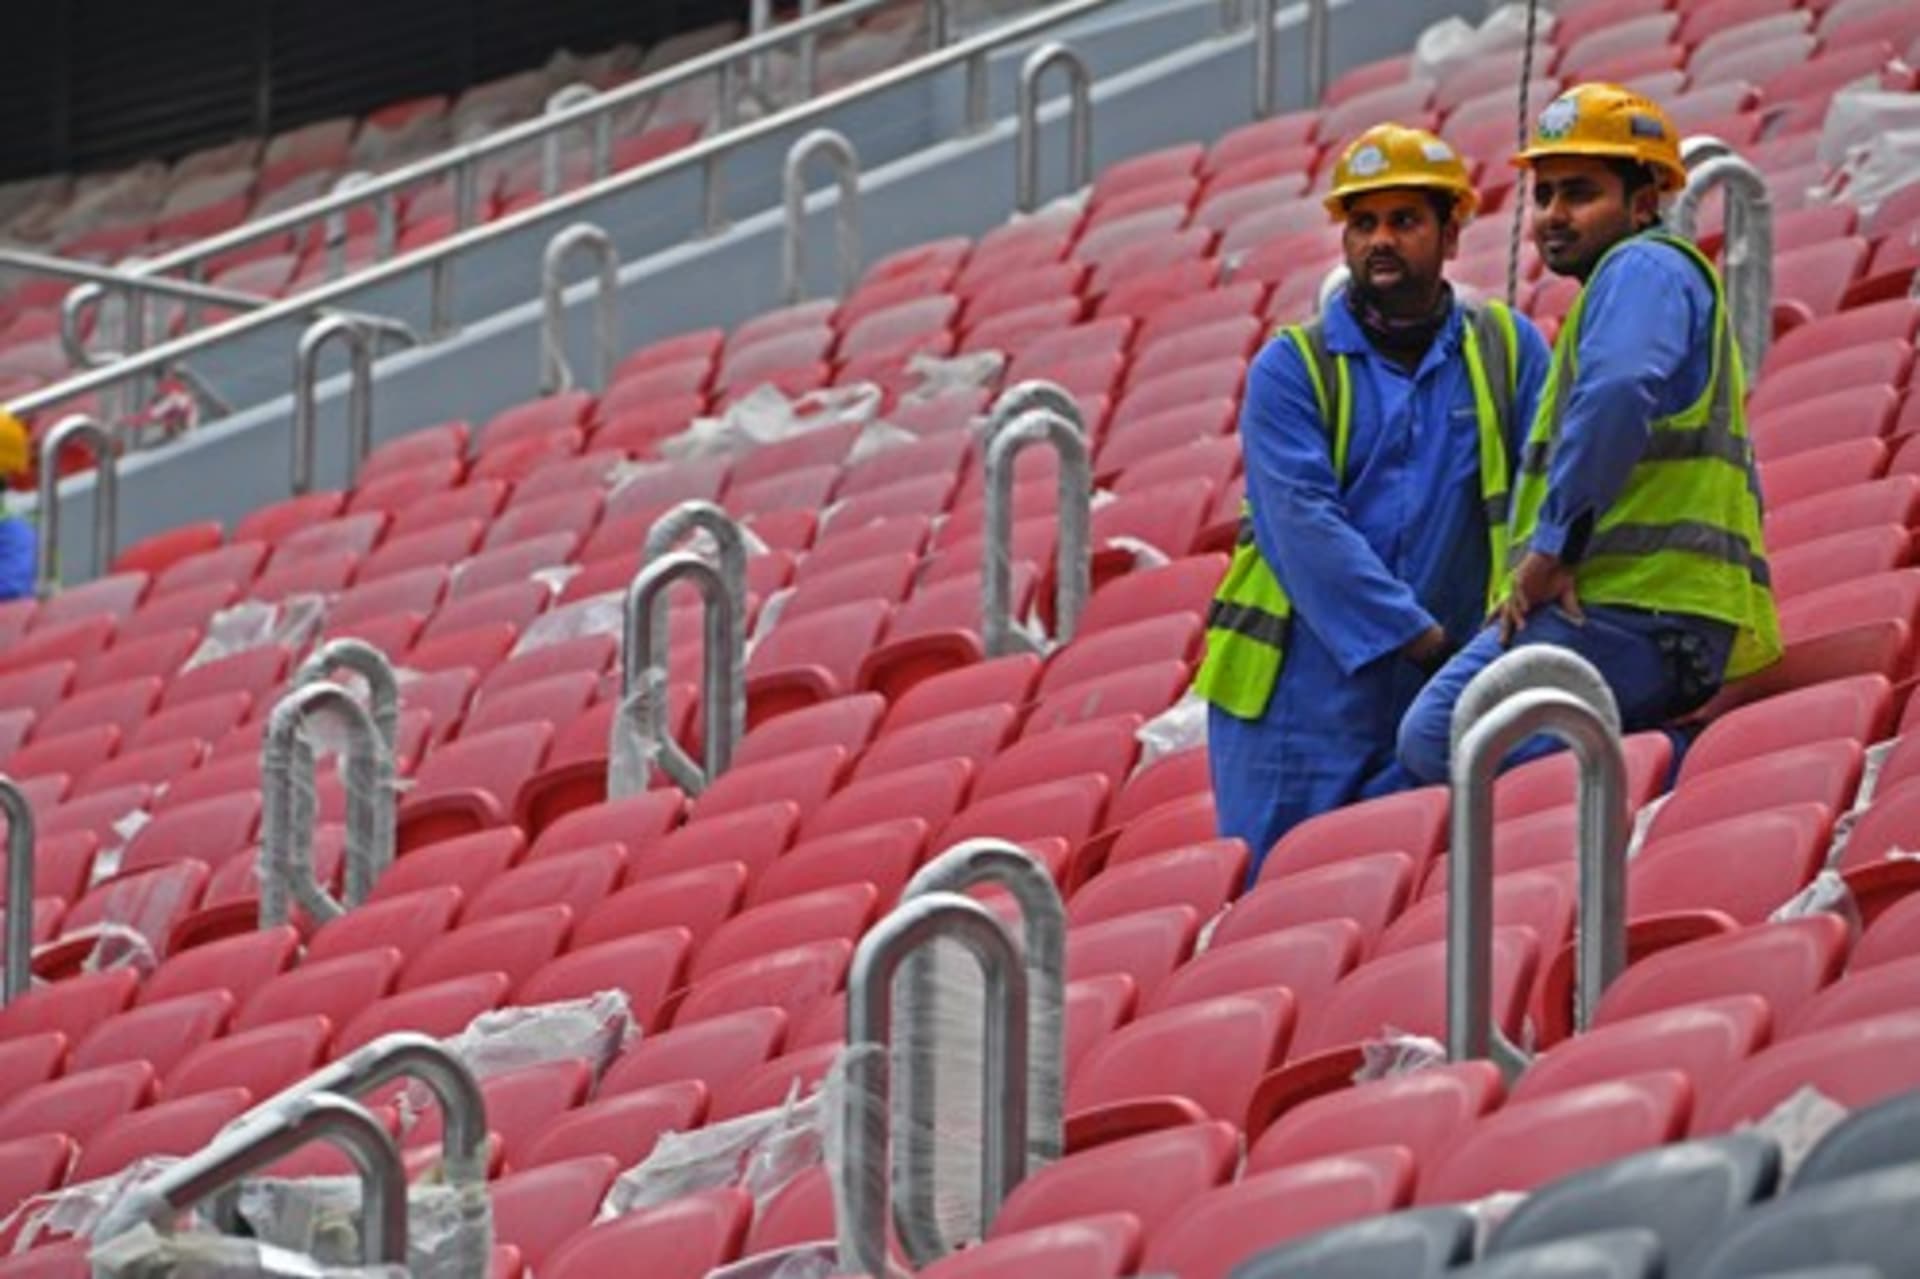 Odhaduje se, že v Kataru při stavbě fotbalových stadionů zahynuOdhaduje se, že v Kataru při stavbě fotbalových stadionů zahynuly až tisíce zahraničních dělníků.ly až tisíce zahraničních dělníků.